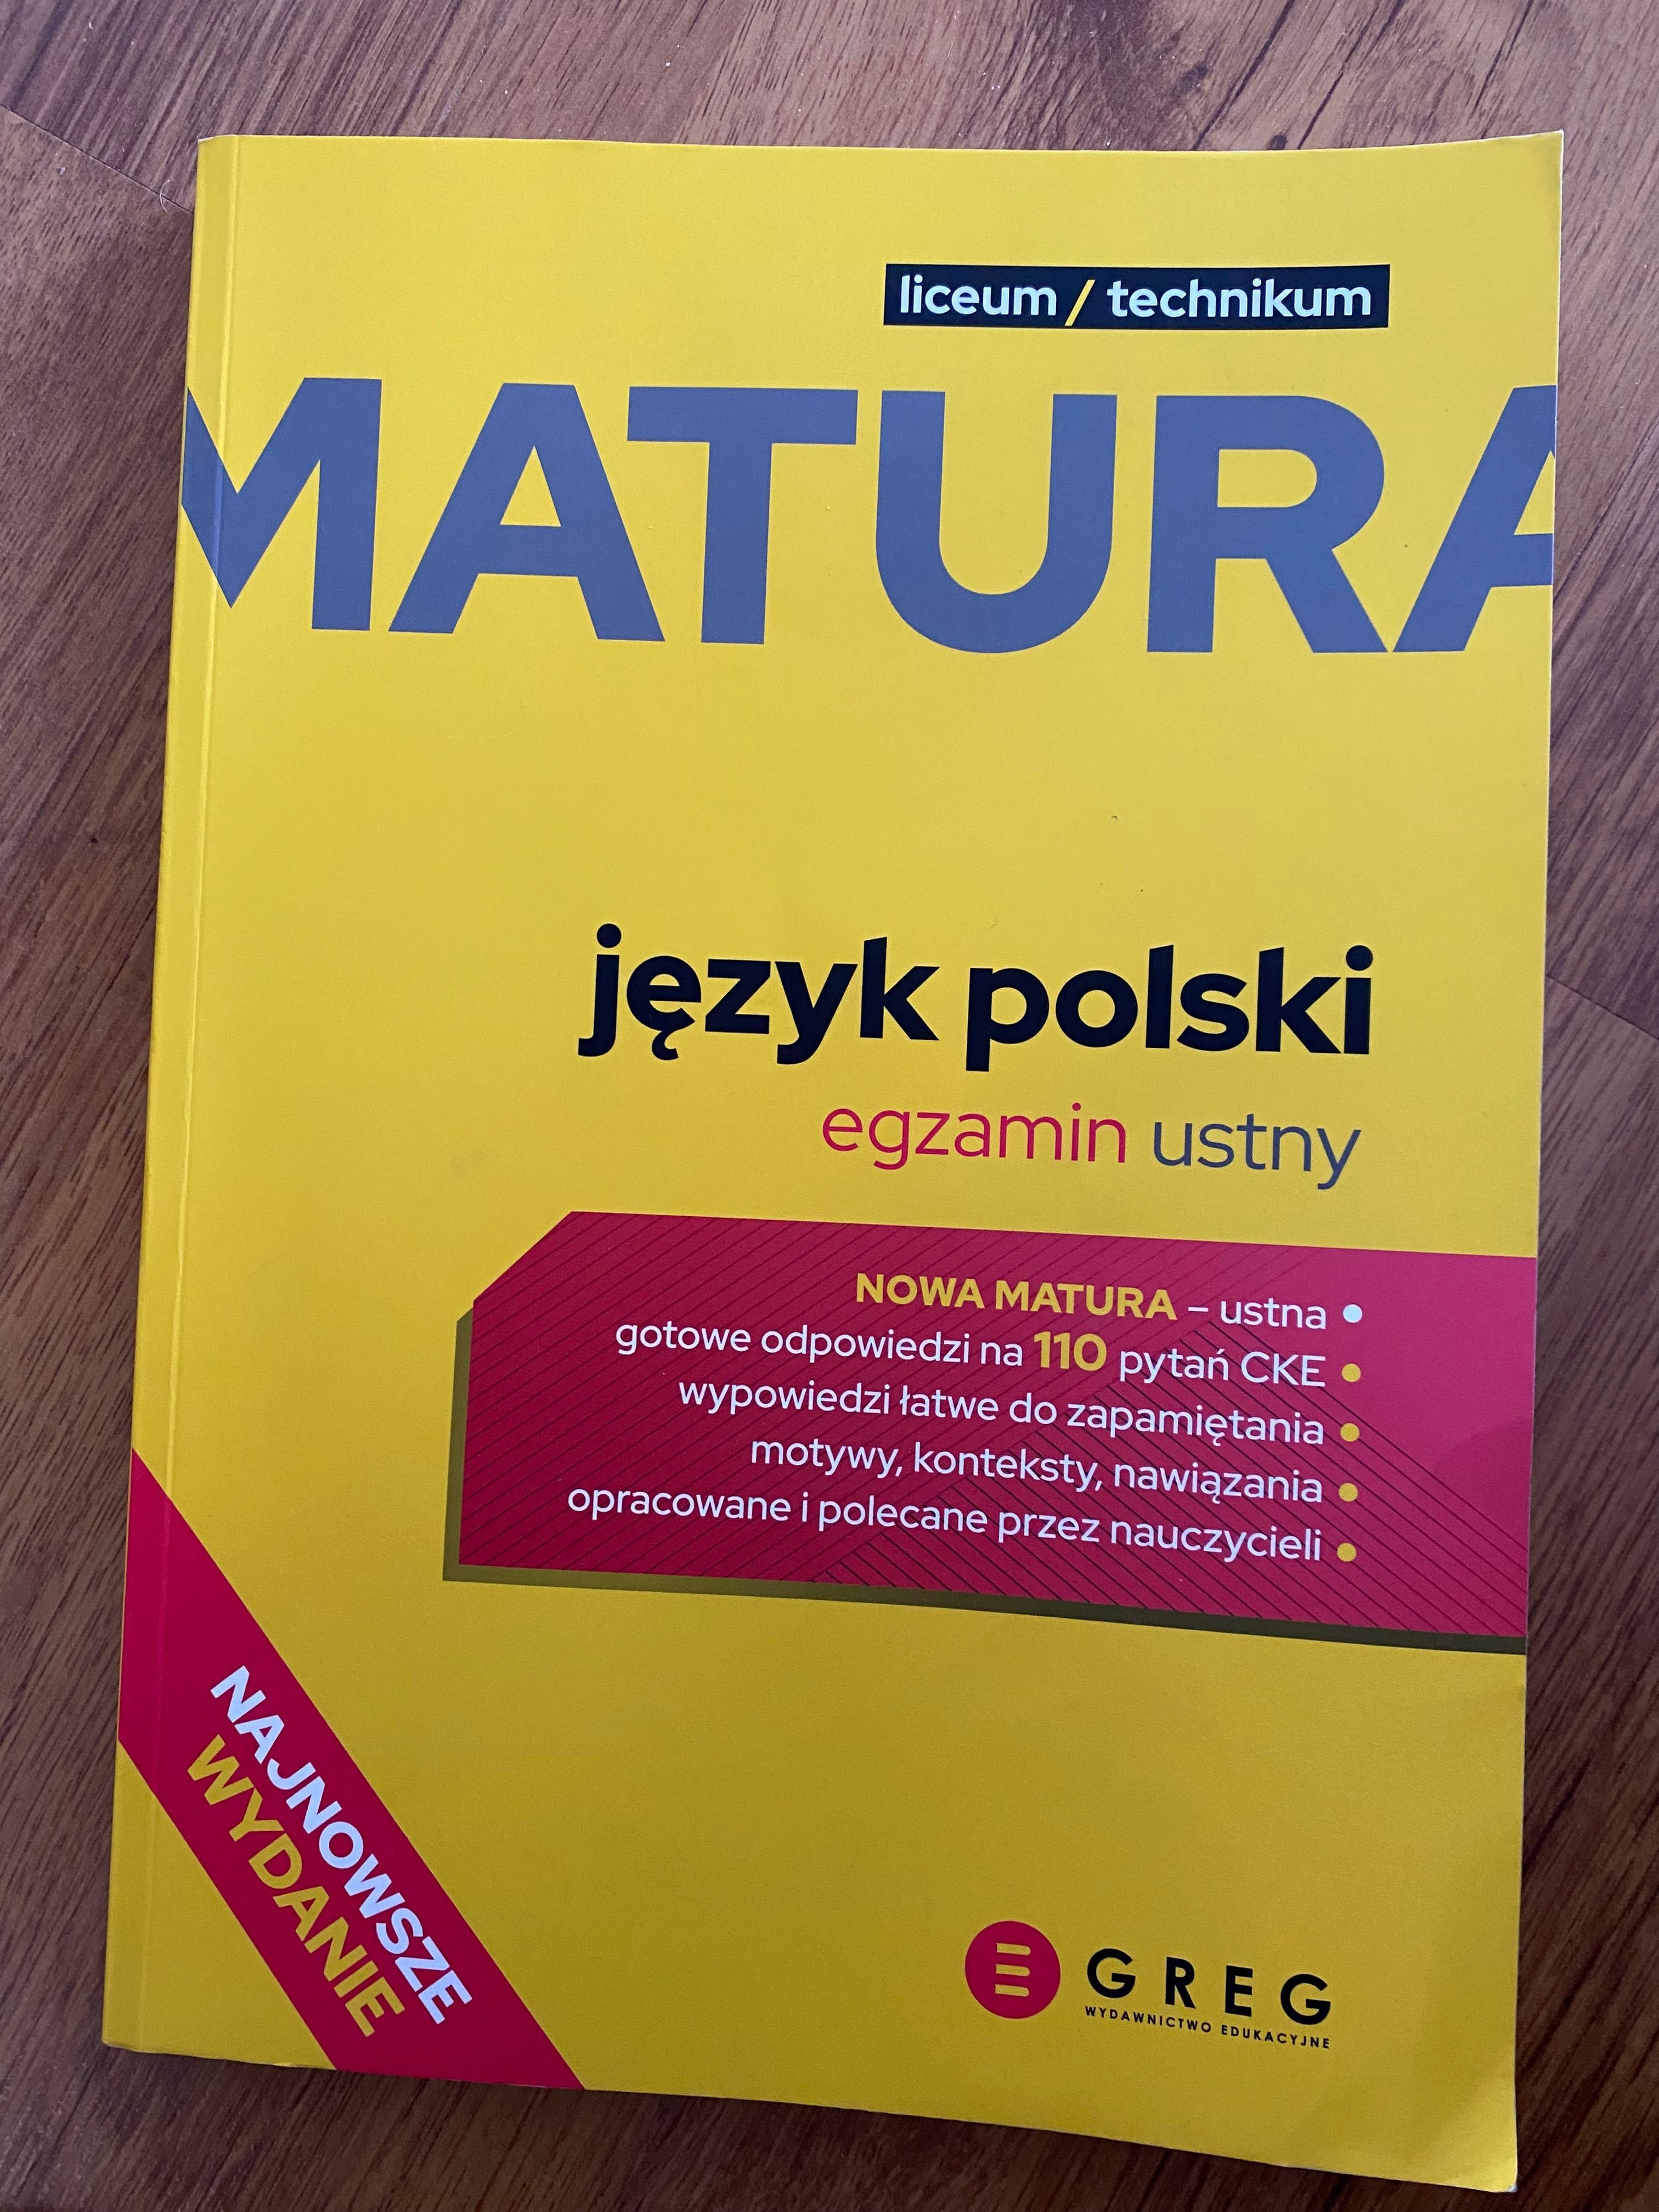 Matura język Polski - egzamin ustny GREG